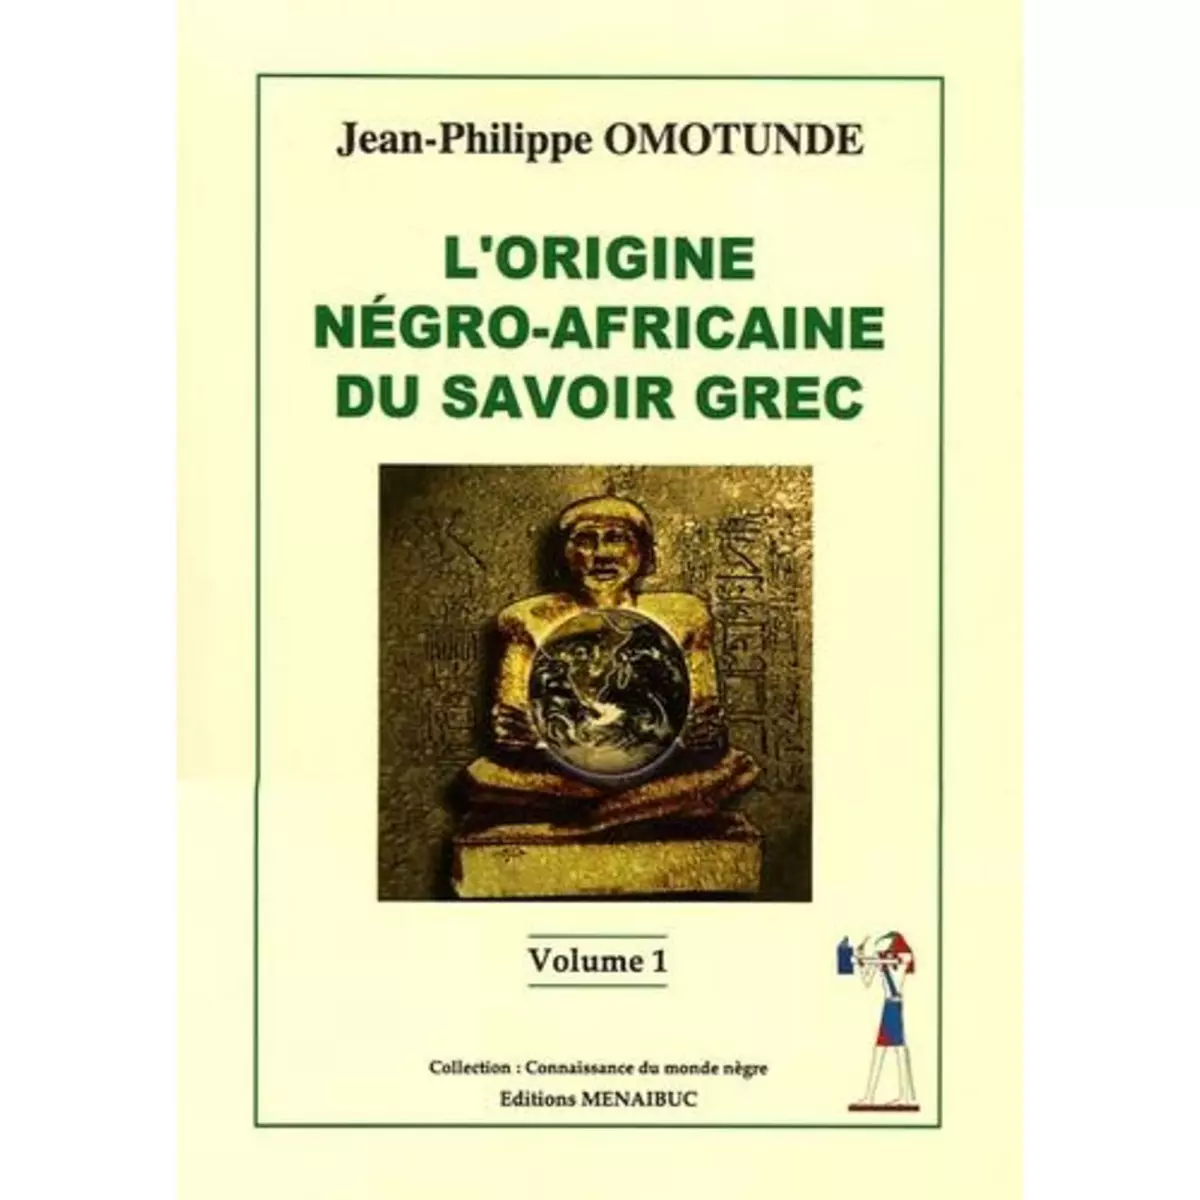  L'ORIGINE NEGRO-AFRICAINE DU SAVOIR GREC, Omotunde Jean-Philippe